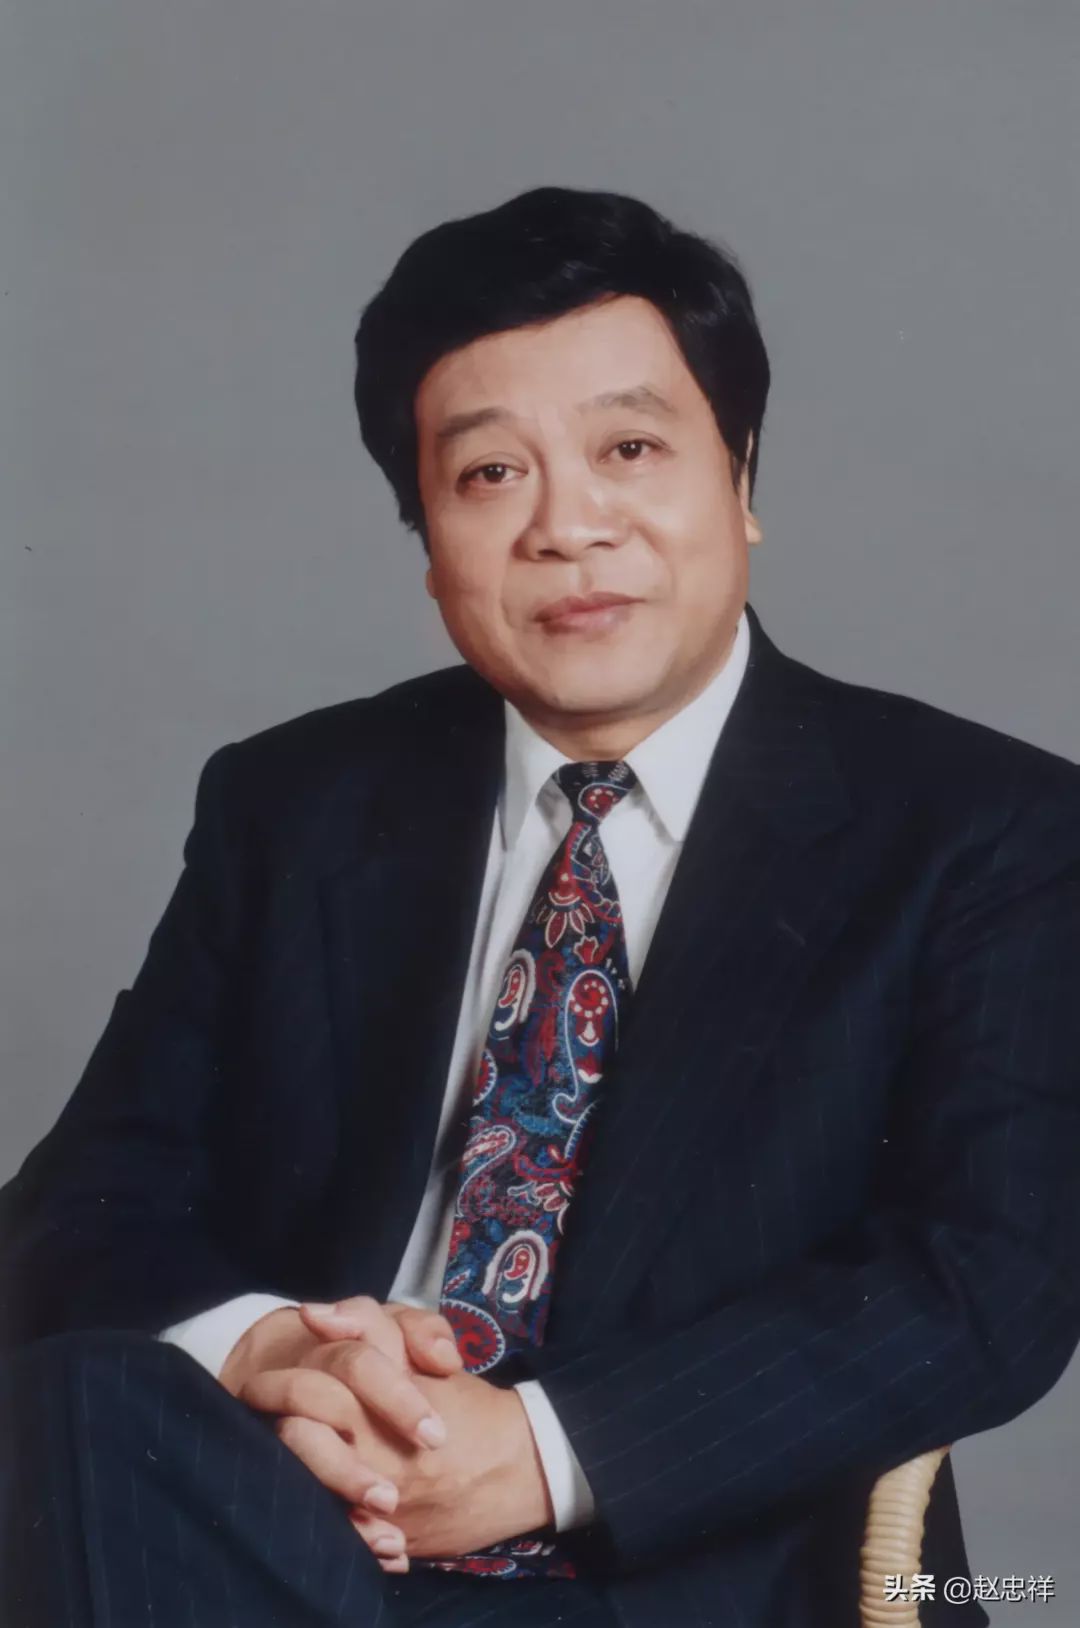 赵忠祥去世 代表中国电视广播行业一个时代的结束